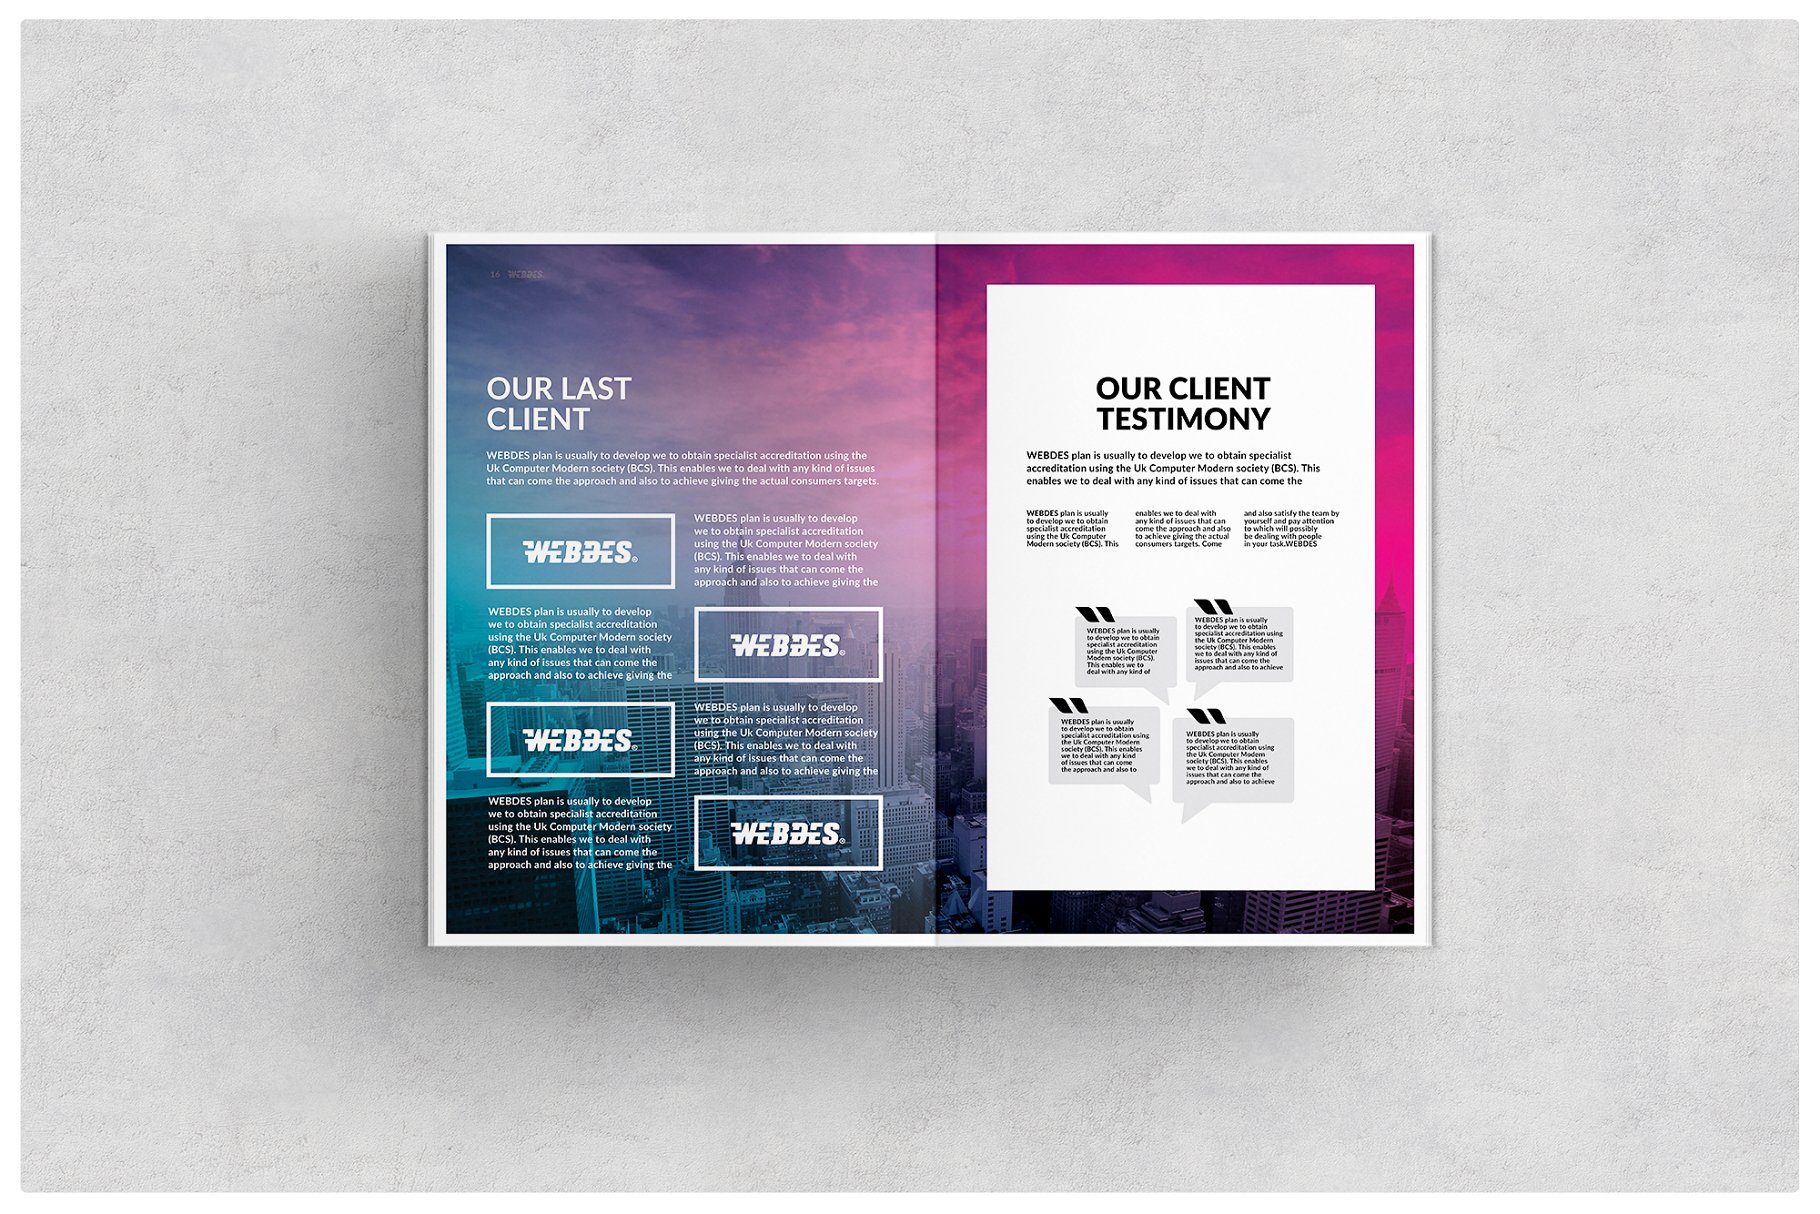 科技公司企业画册模板 Web Design Brochure插图(5)